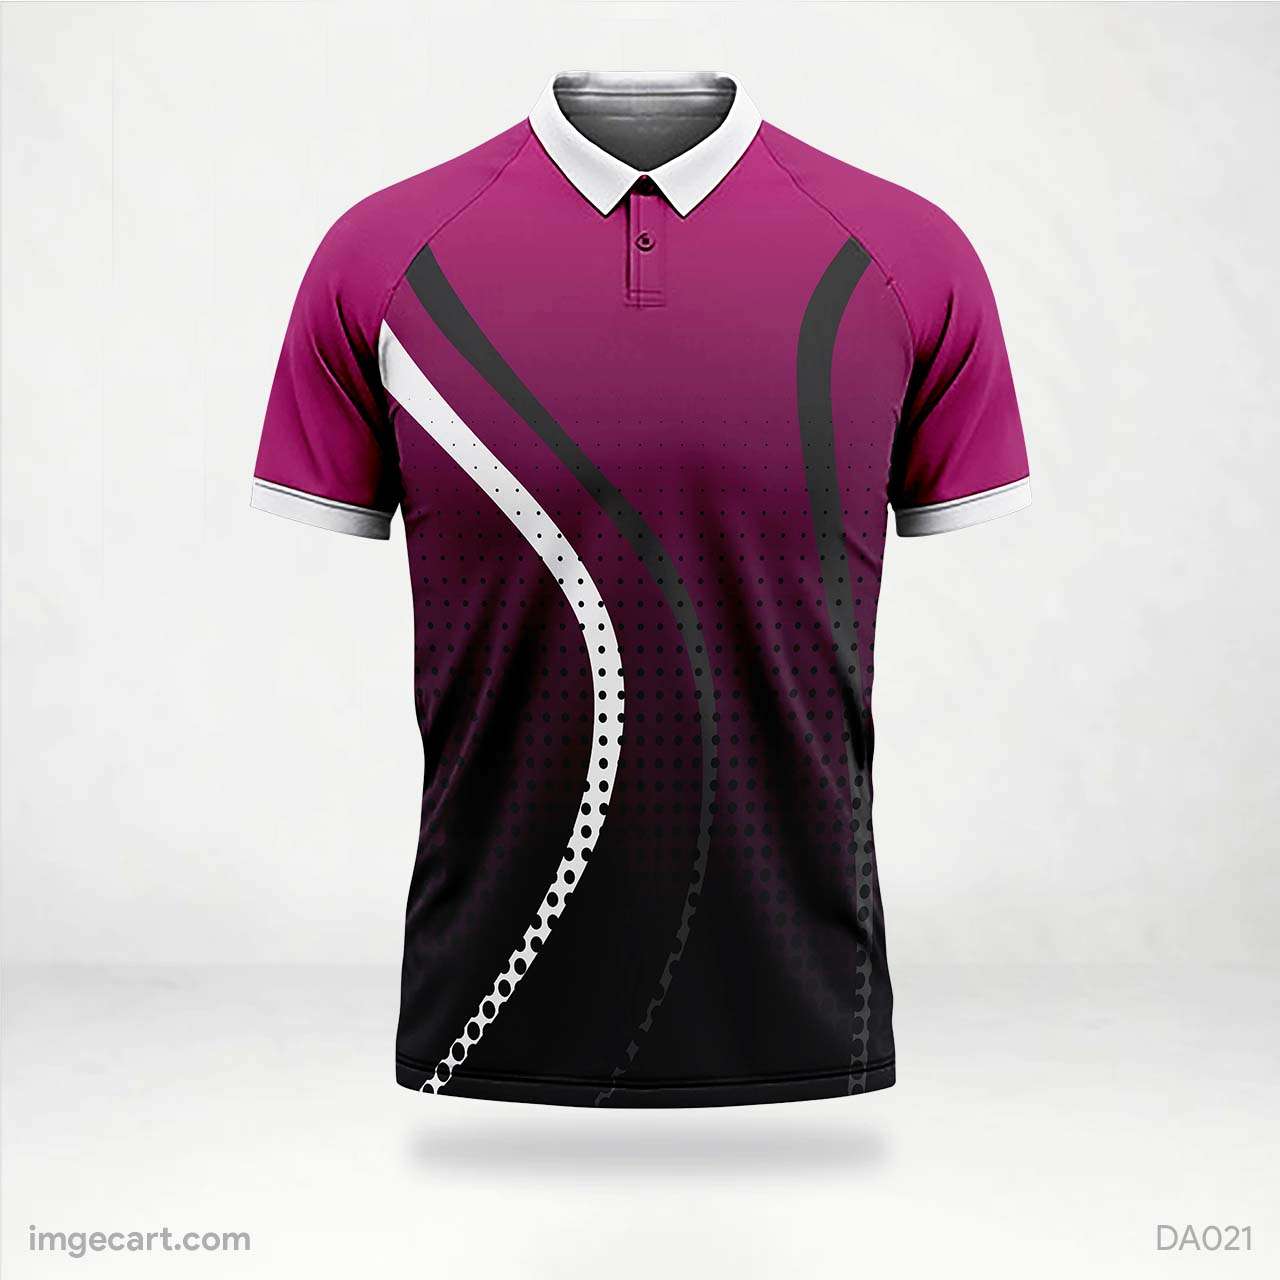 Cricket Jersey Design Violet And Black - imgecart